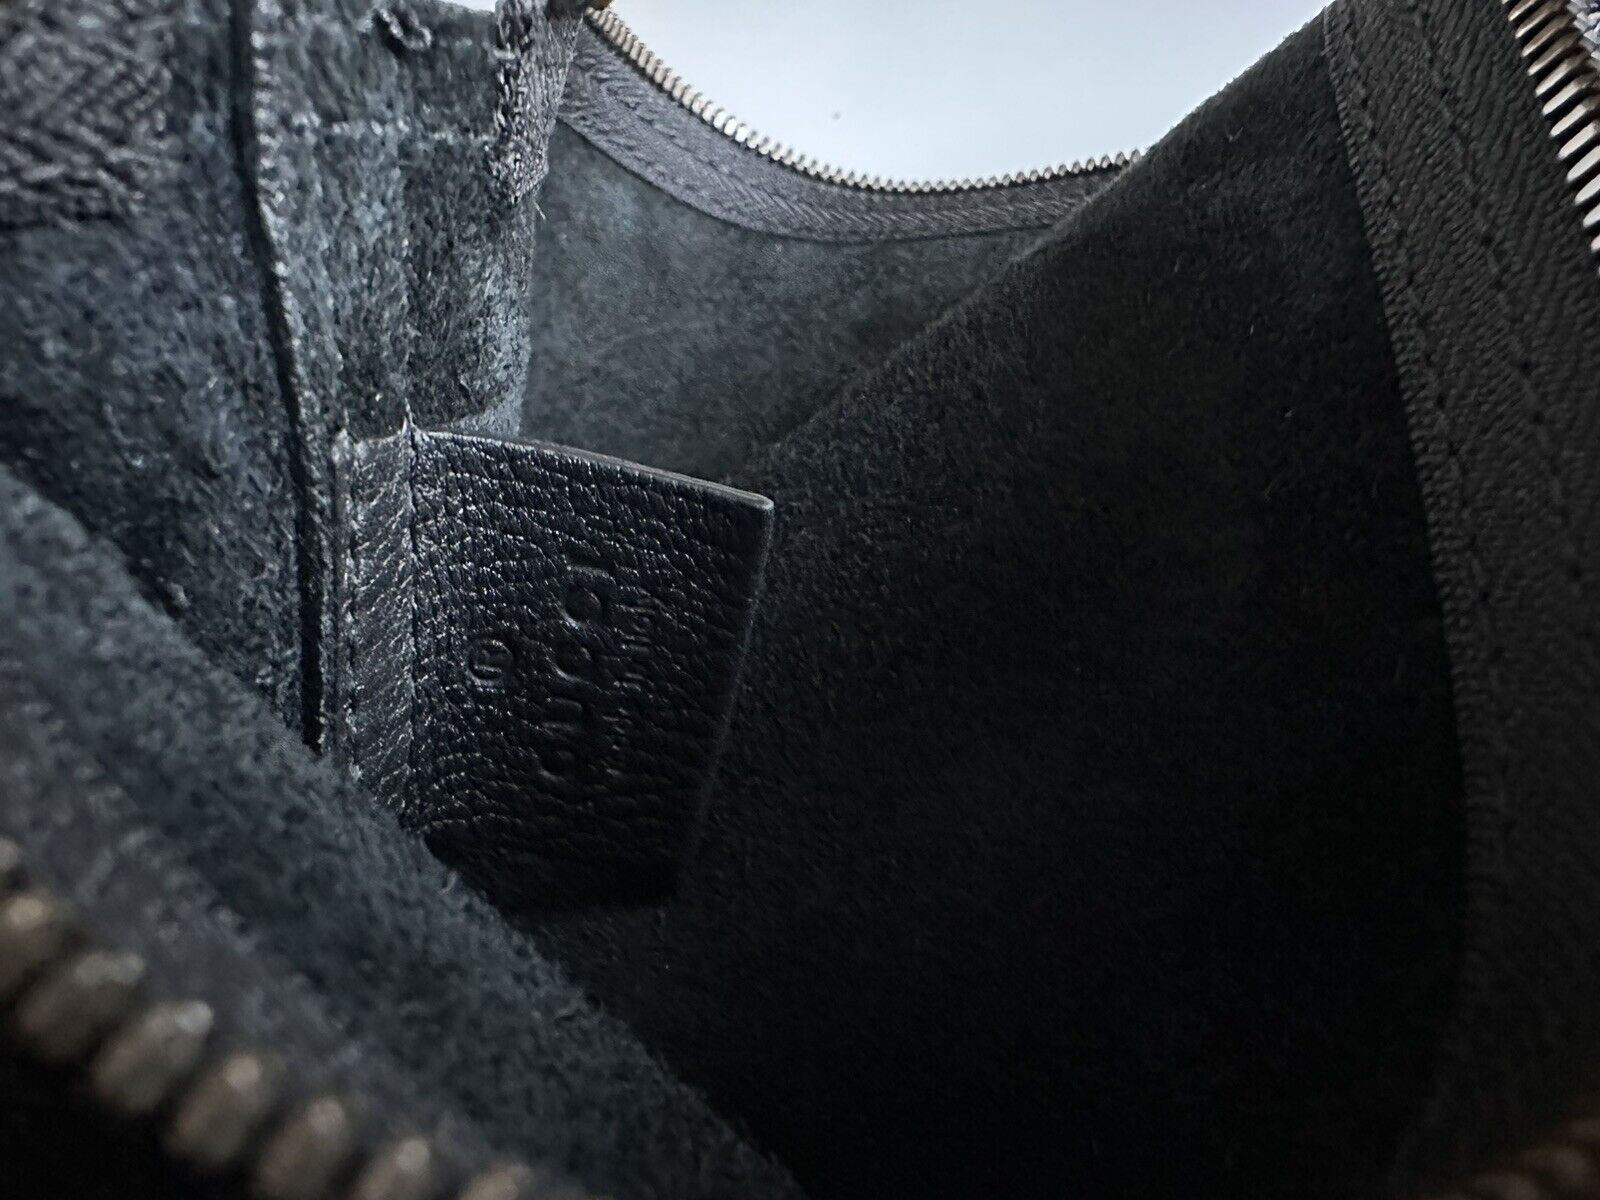 Neue Gucci G Web Gucci Print Reißverschlusstasche in Schwarz, hergestellt in Italien 